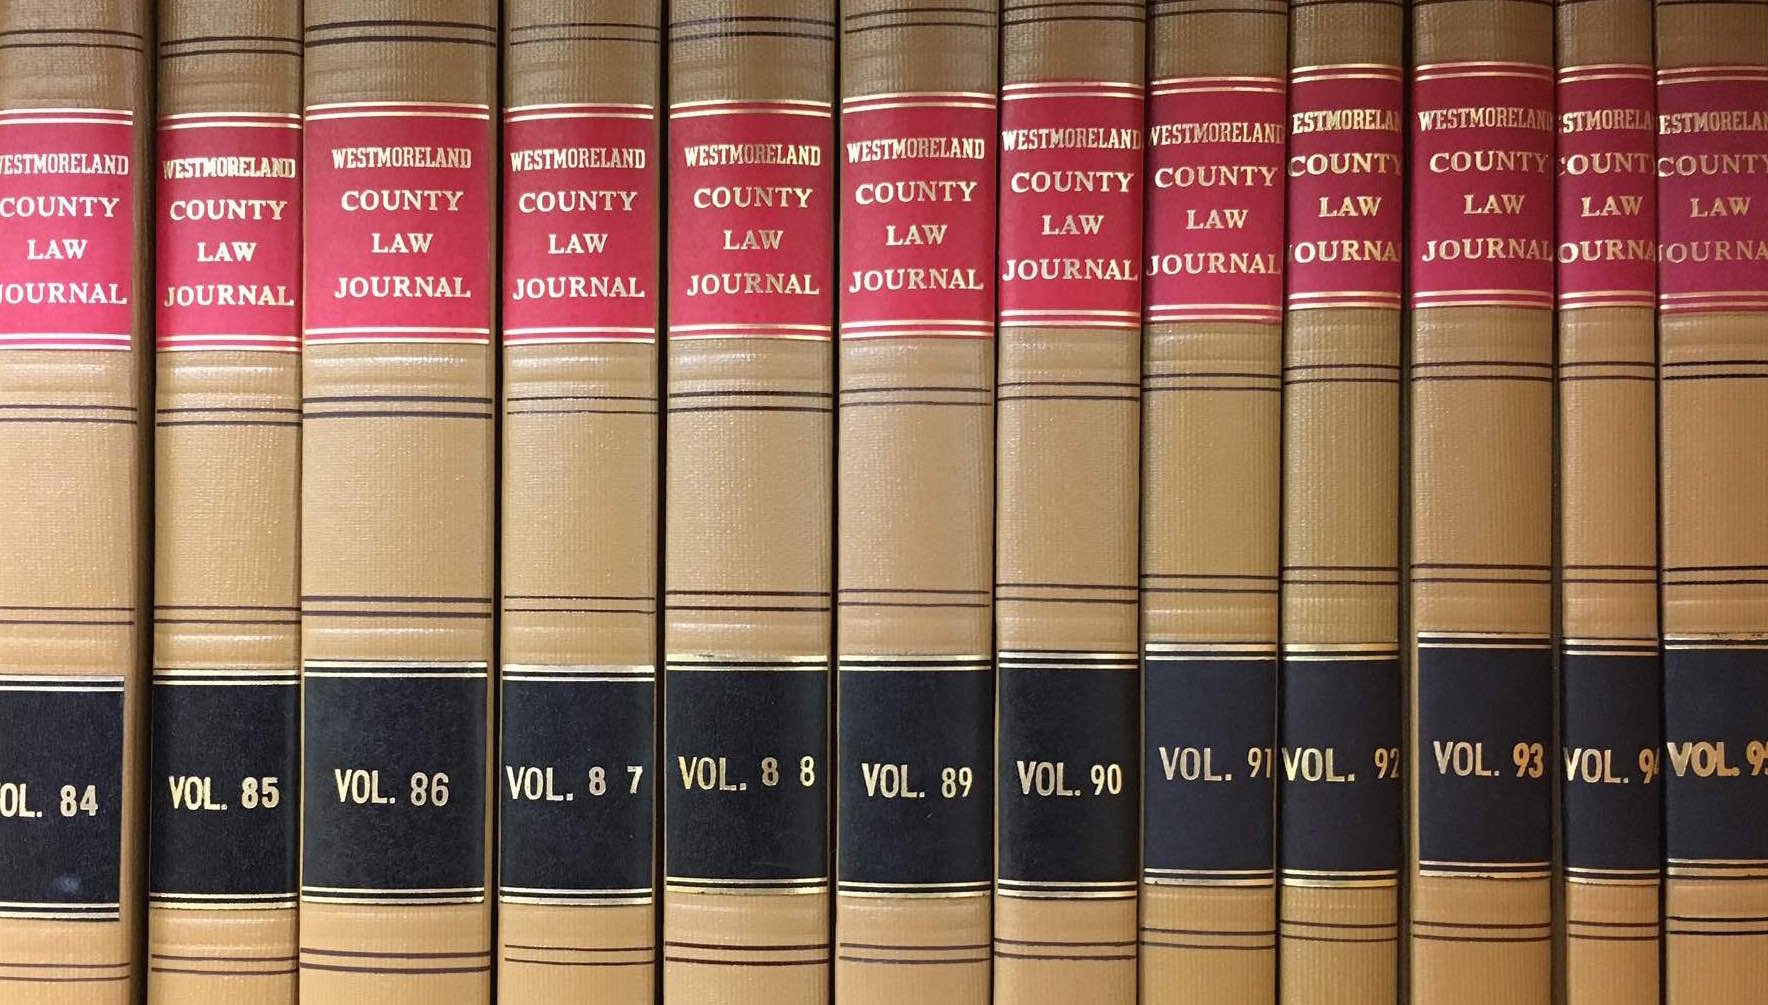 Westmoreland Law Journal bound volumes